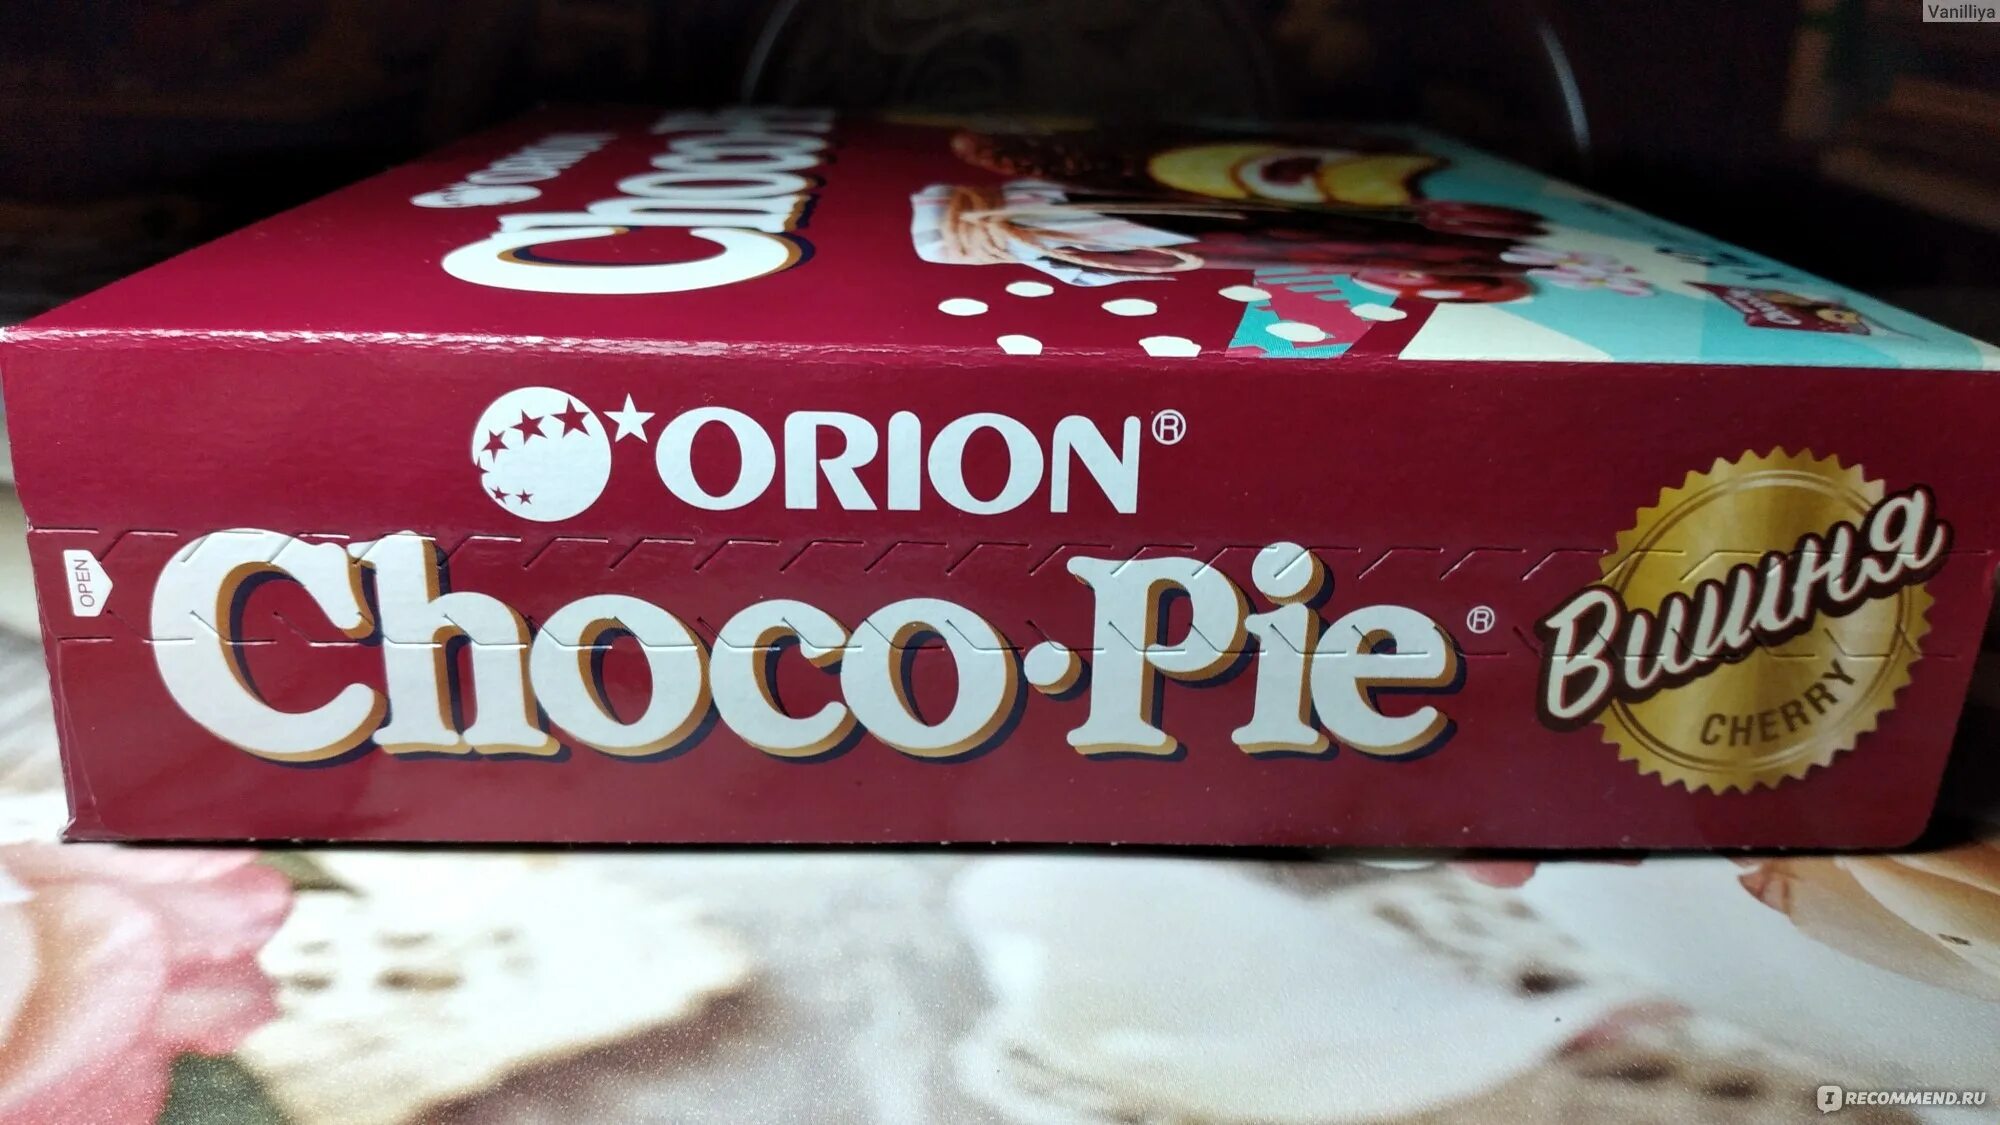 Чокопай со вкусом арбуза. Корейский чокопай. Чокопай Венский. Orion Choco-pie замечательный сюрприз внутри.